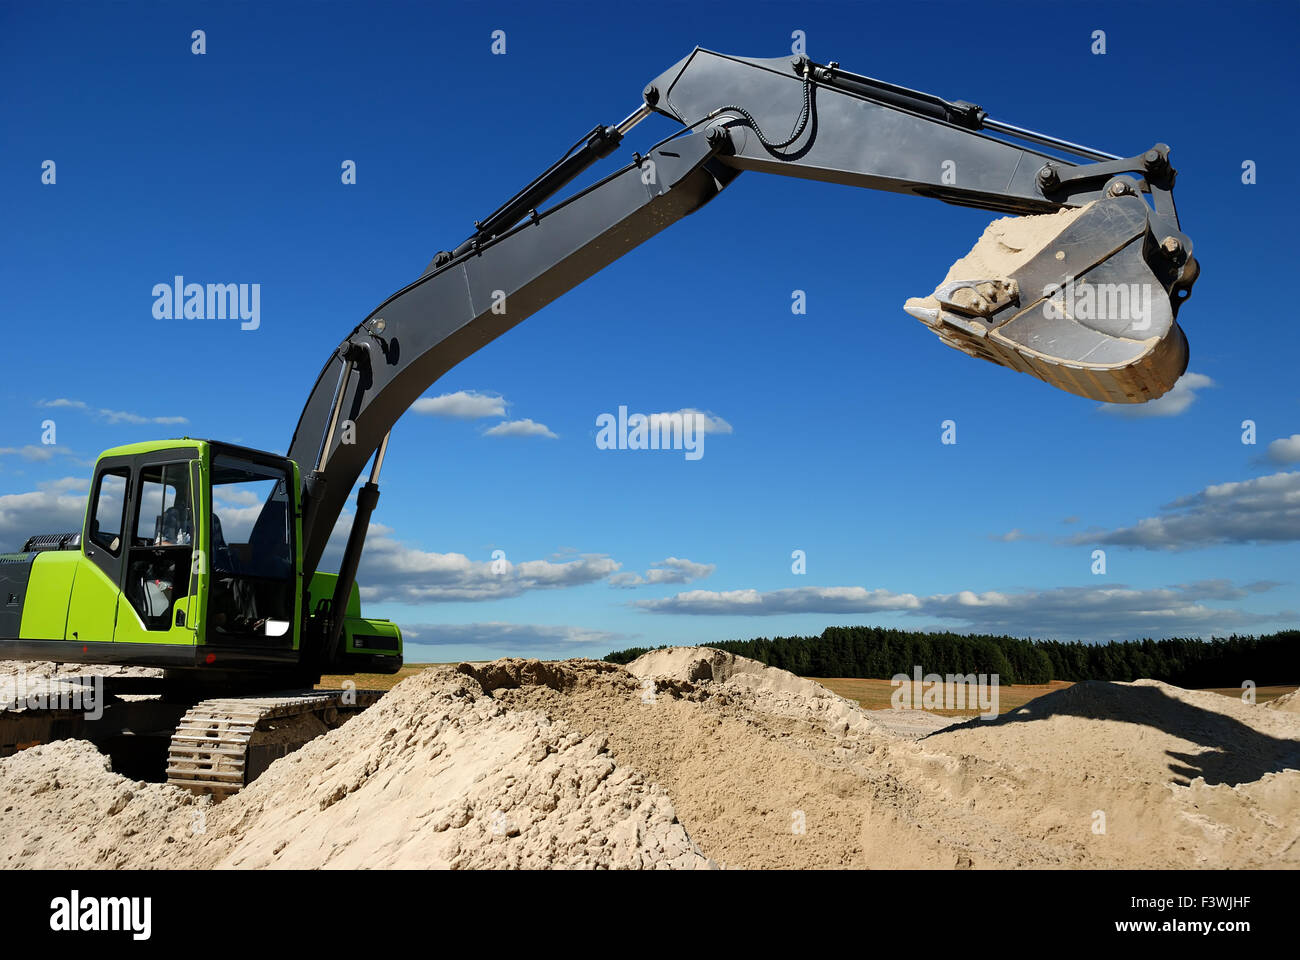 Excavator loader in sandpit Stock Photo